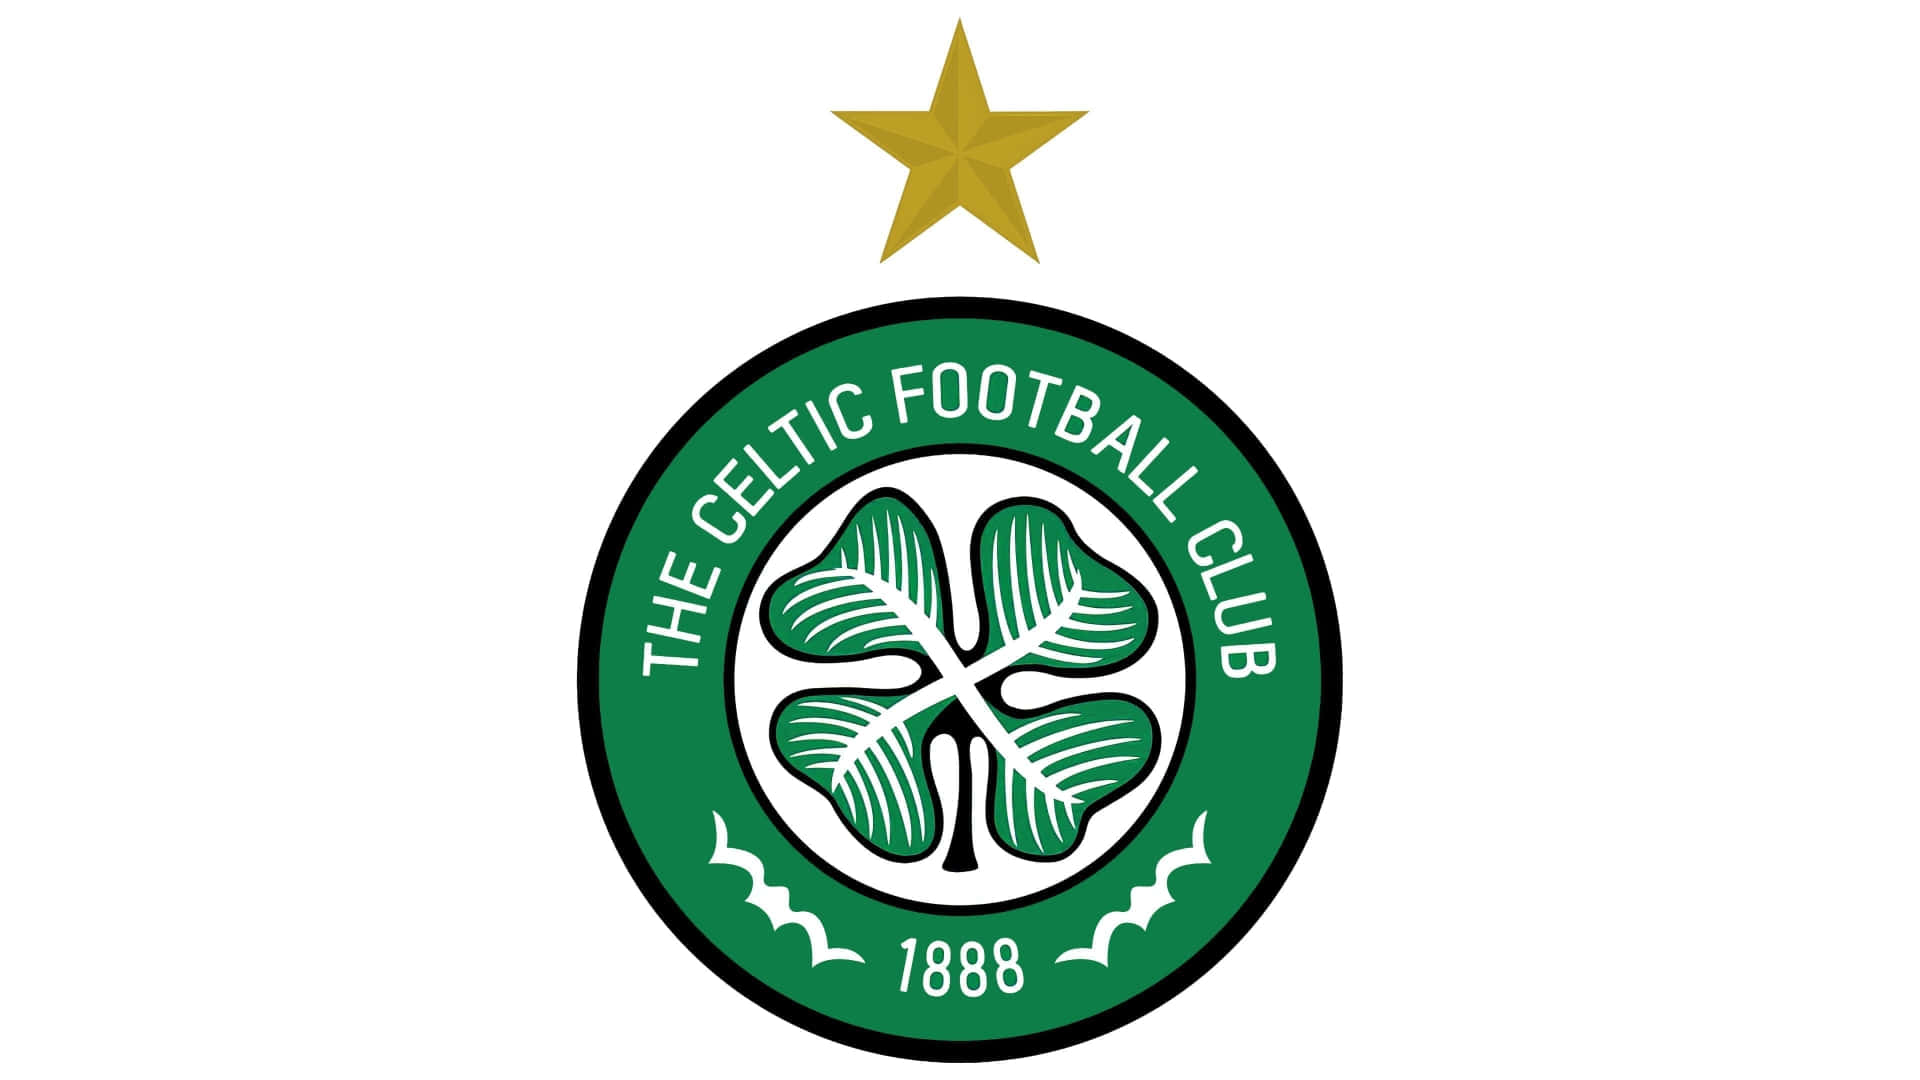 Elverde Y Blanco Del Celtic Football Club. Fondo de pantalla